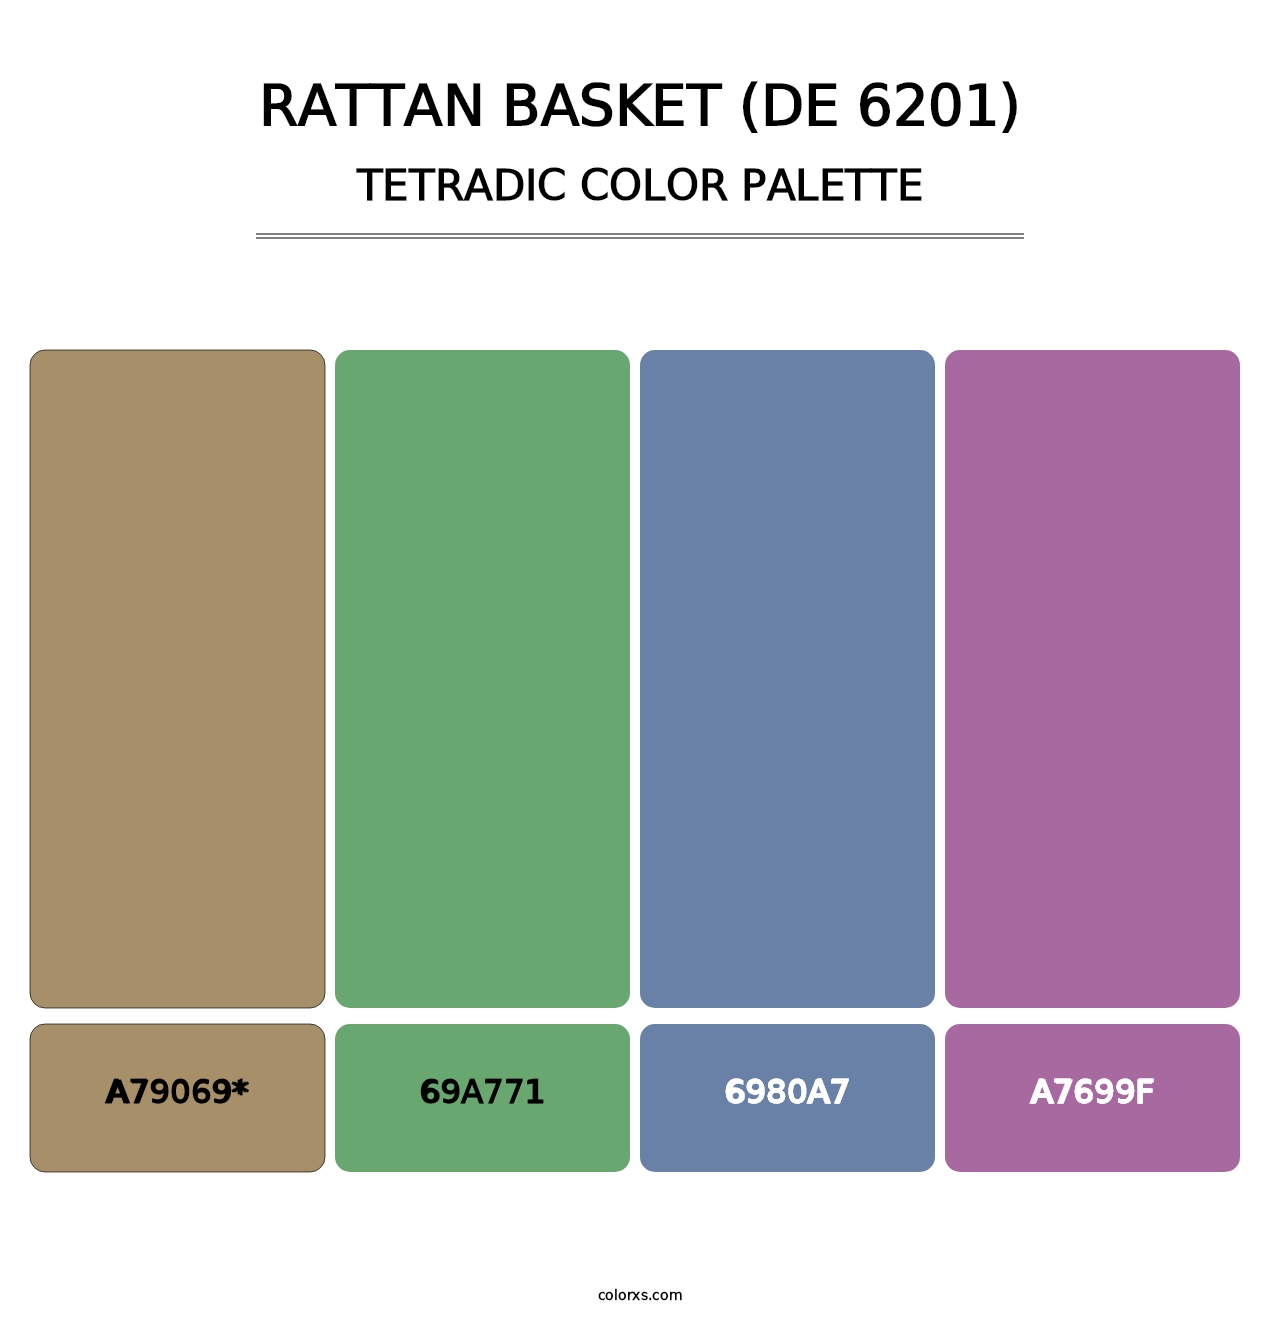 Rattan Basket (DE 6201) - Tetradic Color Palette